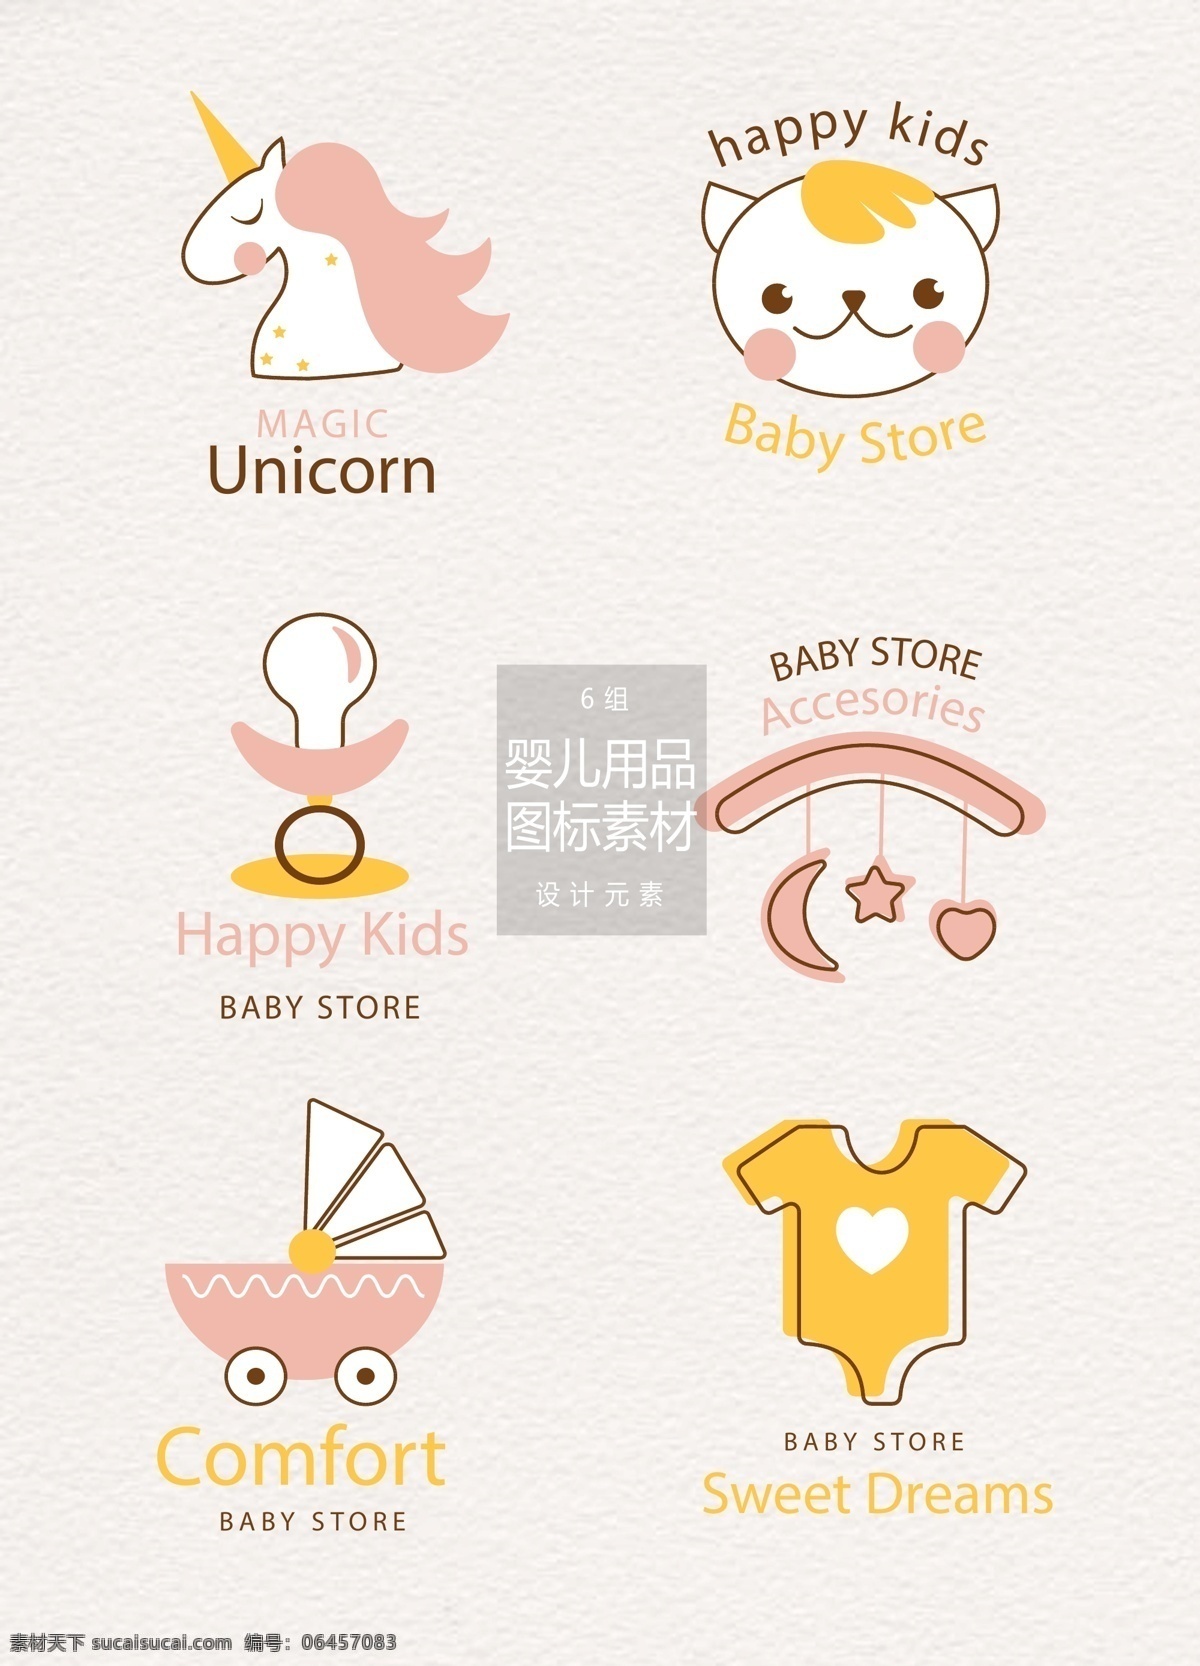 手绘 婴儿用品 图标 元素 图标设计 设计元素 玩具 婴儿用品图标 手绘图标 独角兽 奶嘴 婴儿车 婴儿服